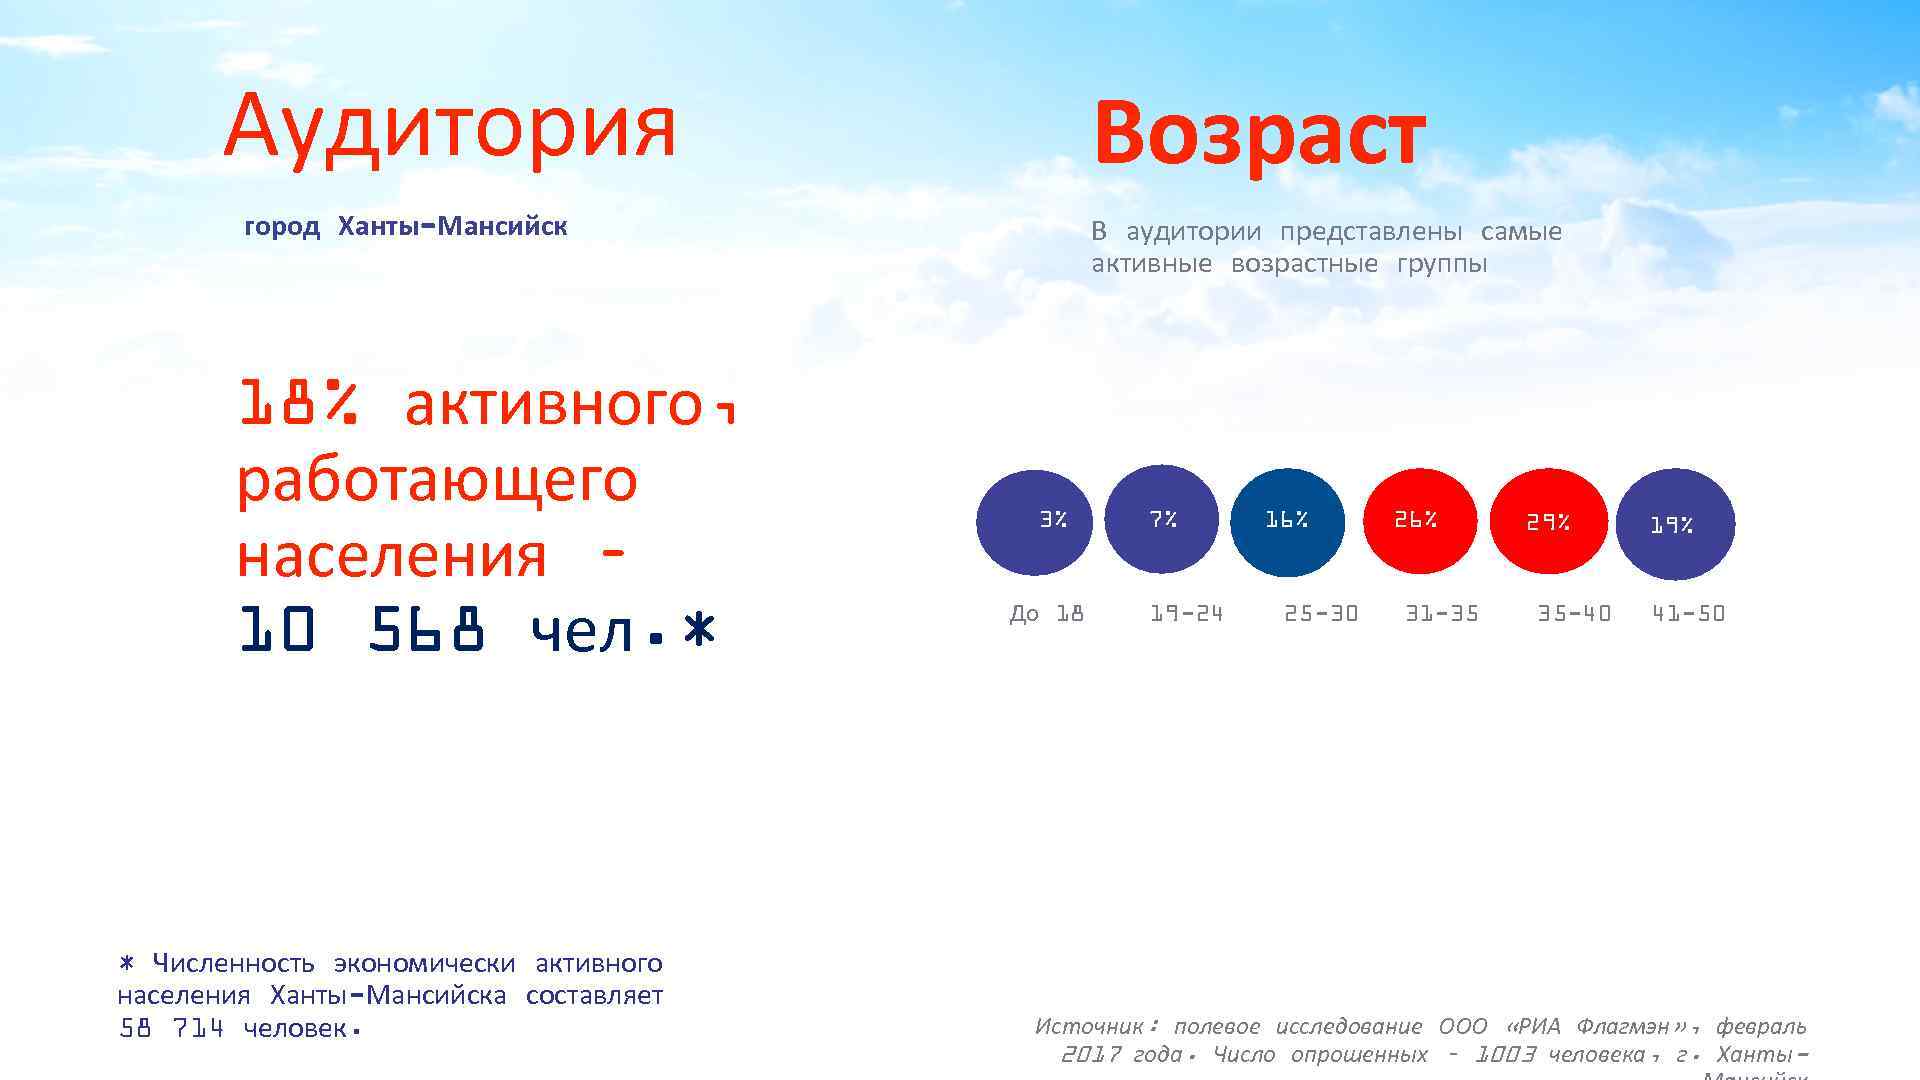 Аудитория Возраст город Ханты-Мансийск 18% активного, работающего населения – 10 568 чел. * *